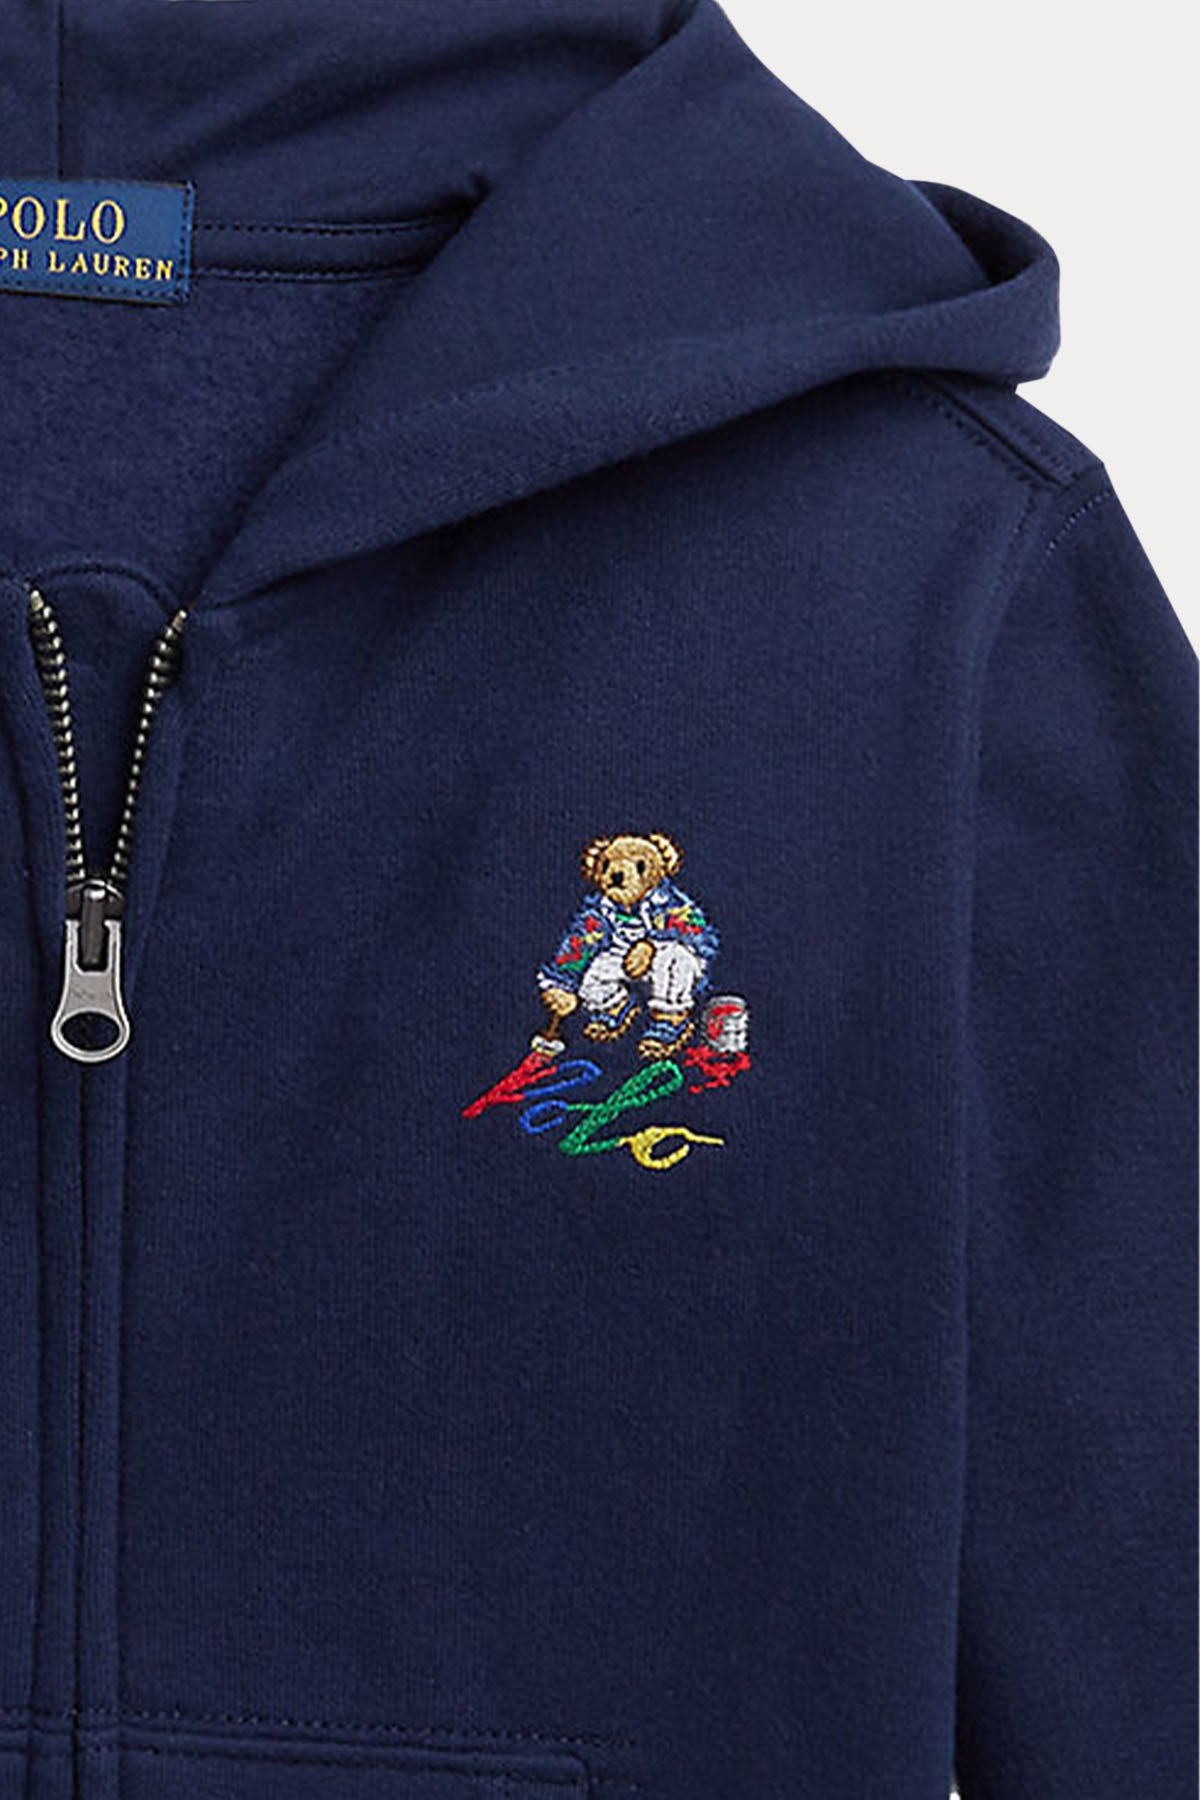 Polo Ralph Lauren Kids 2-7 Yaş Unisex Çocuk Kapüşonlu Polo Bear Sweatshirt Ceket